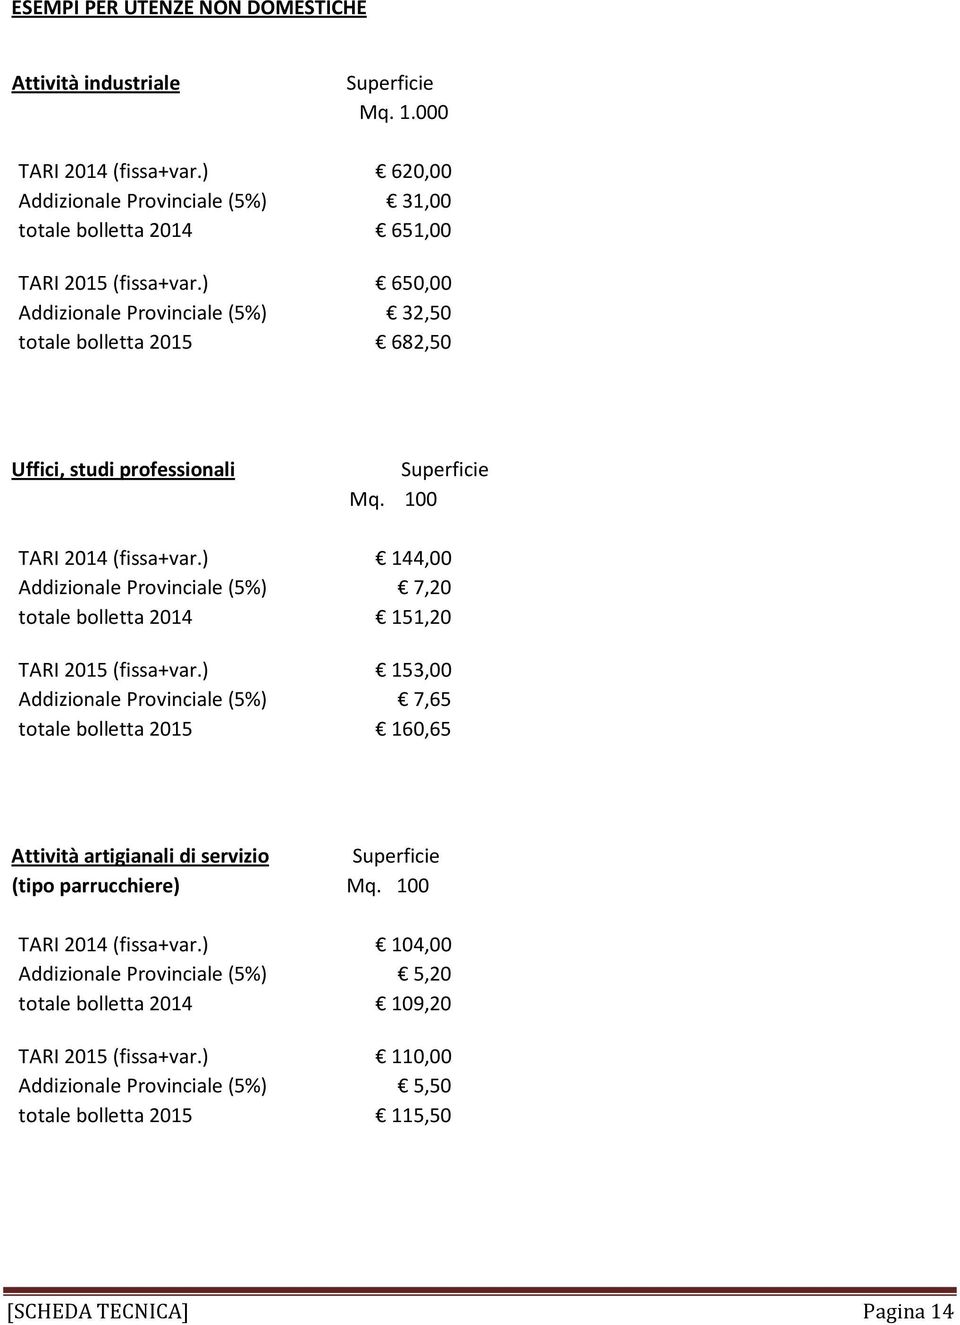 ) 144,00 Addizionale Provinciale (5%) 7,20 totale bolletta 2014 151,20 TARI 2015 (fissa+var.